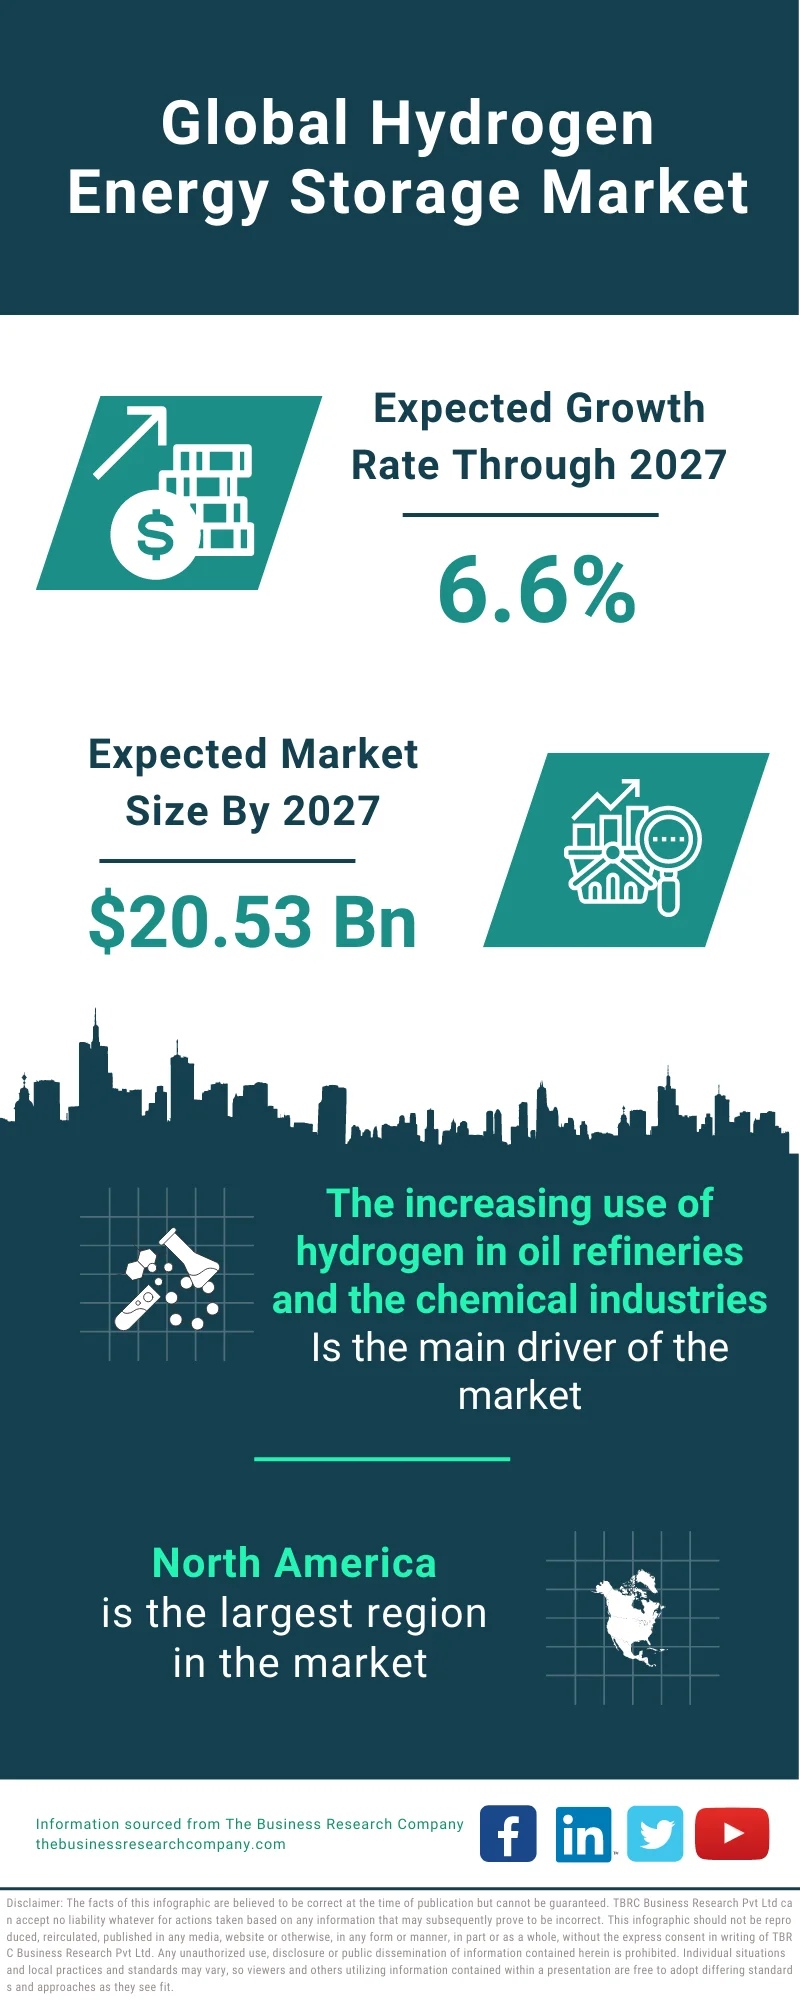 Hydrogen Energy Storage Market